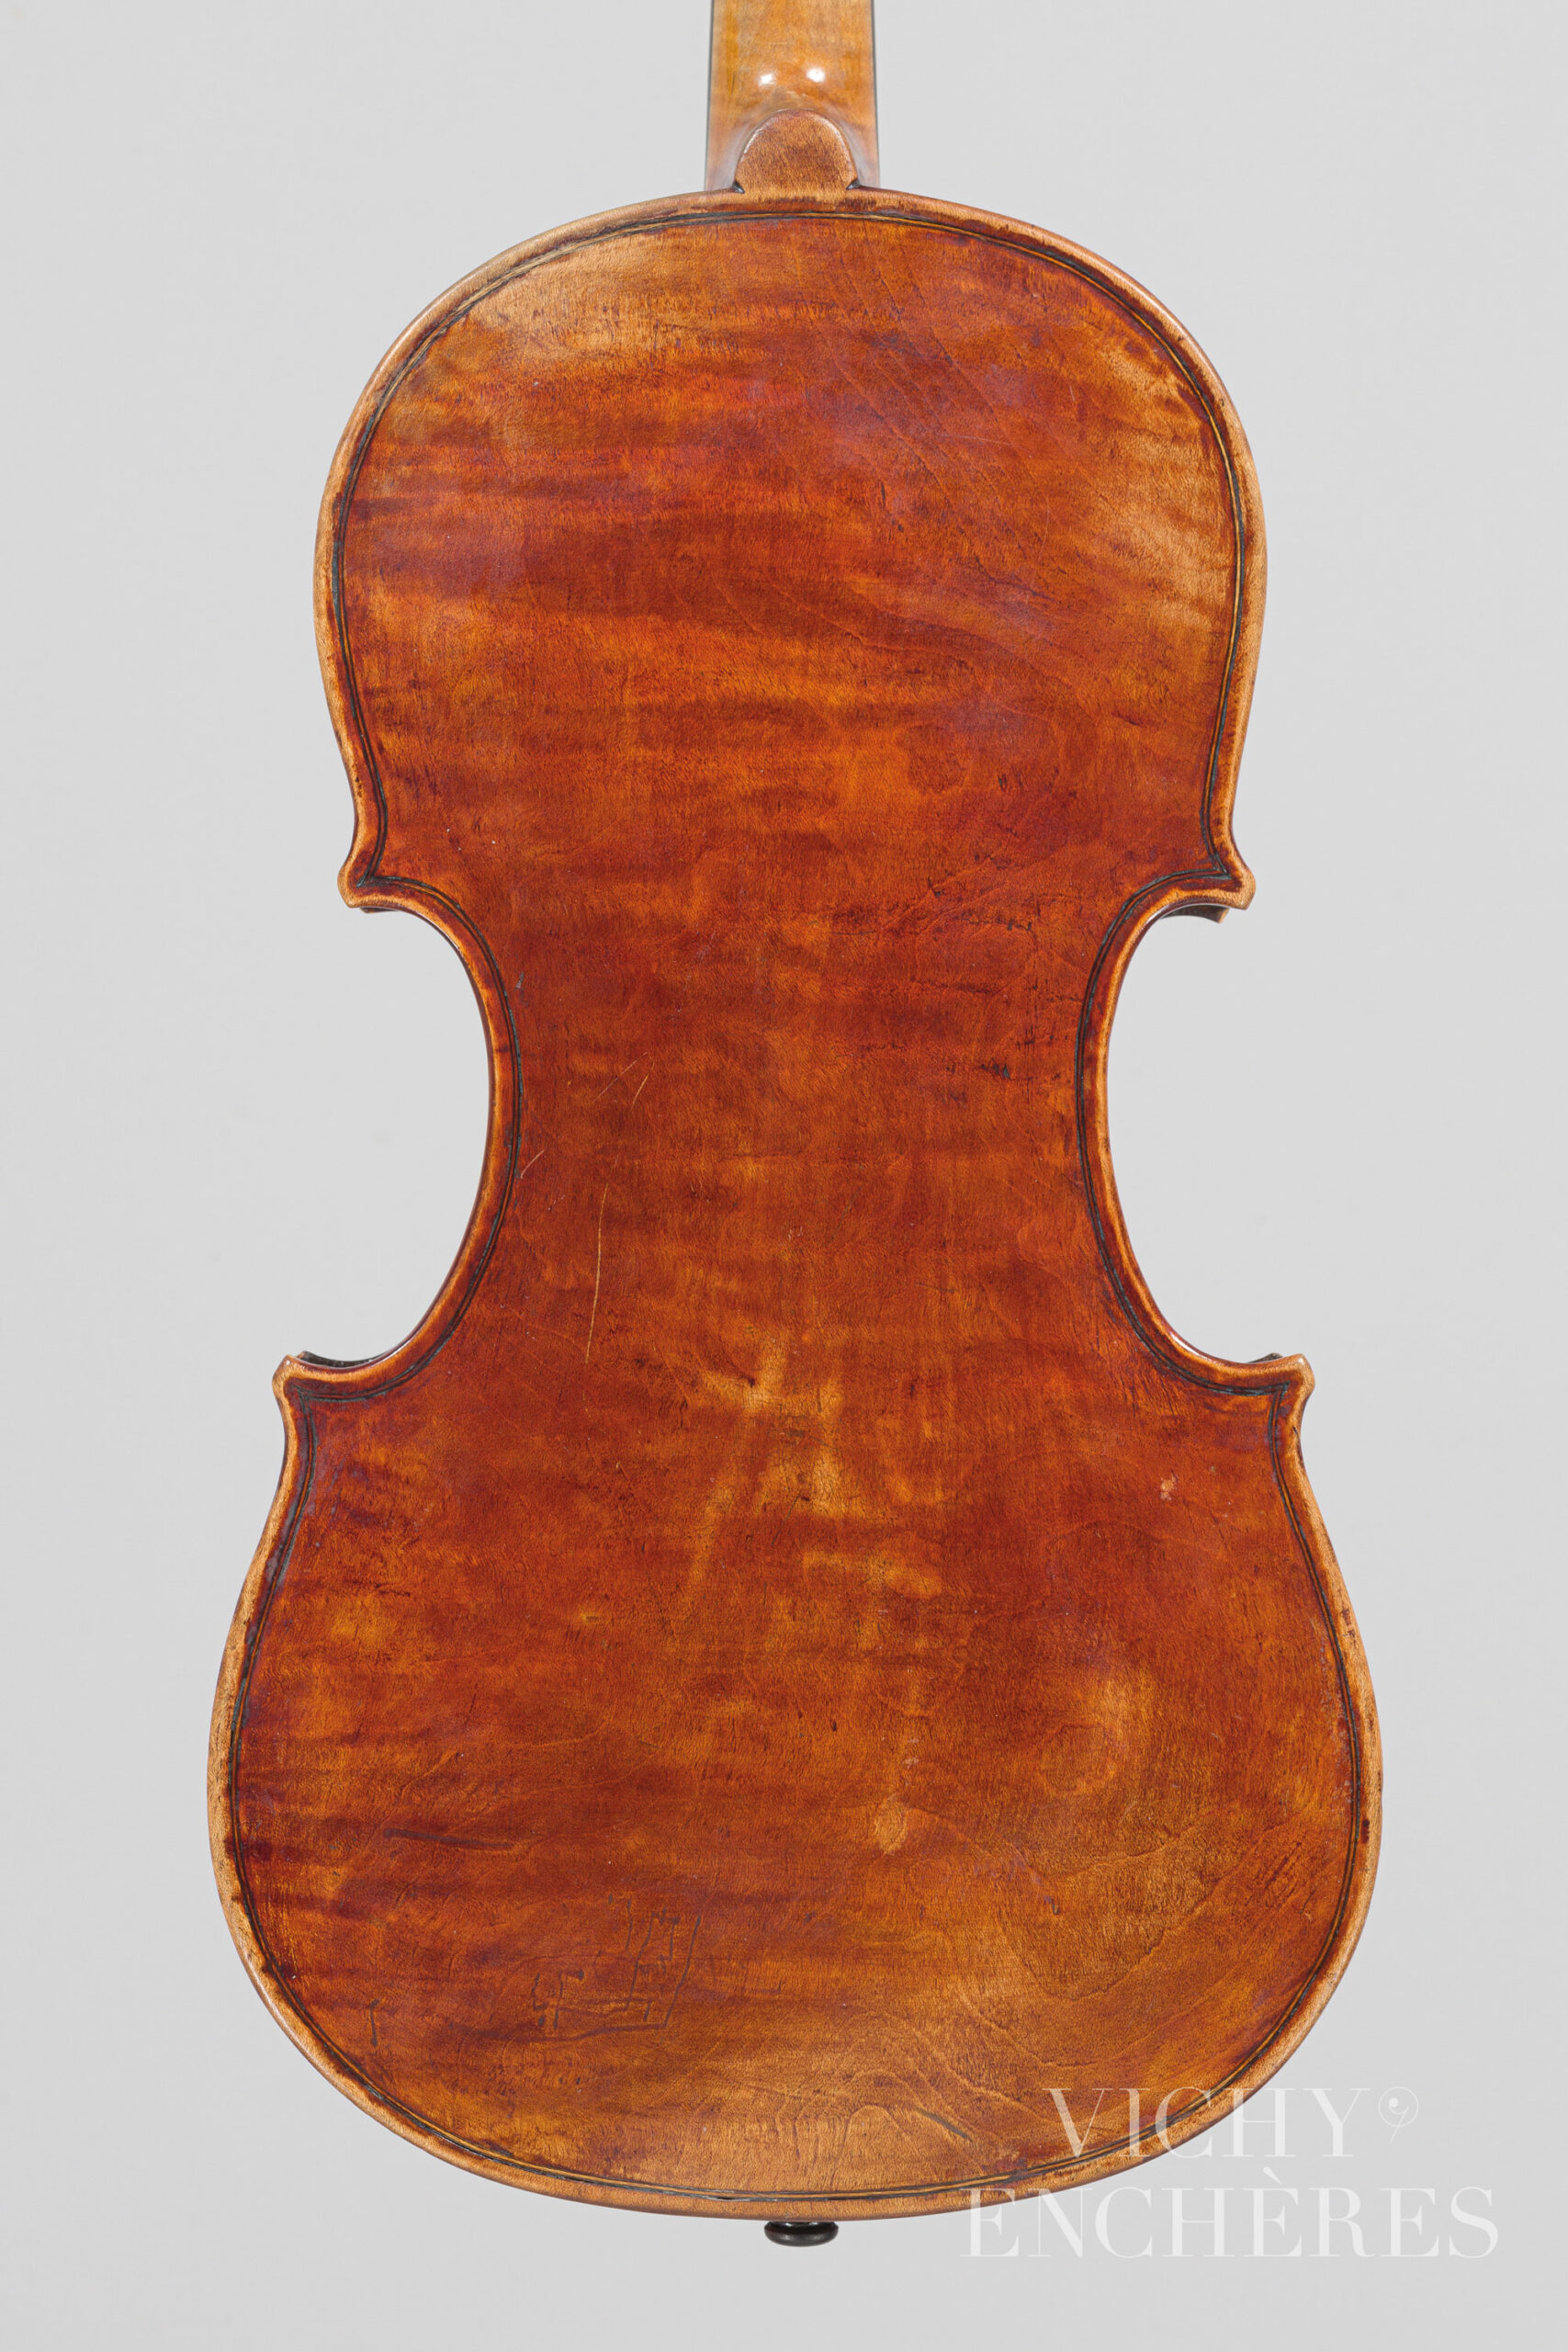 Violon de Stefano SCARAMPELLA Instrument mis en vente par Vichy Enchères le 1er décembre 2022 © Christophe Darbelet